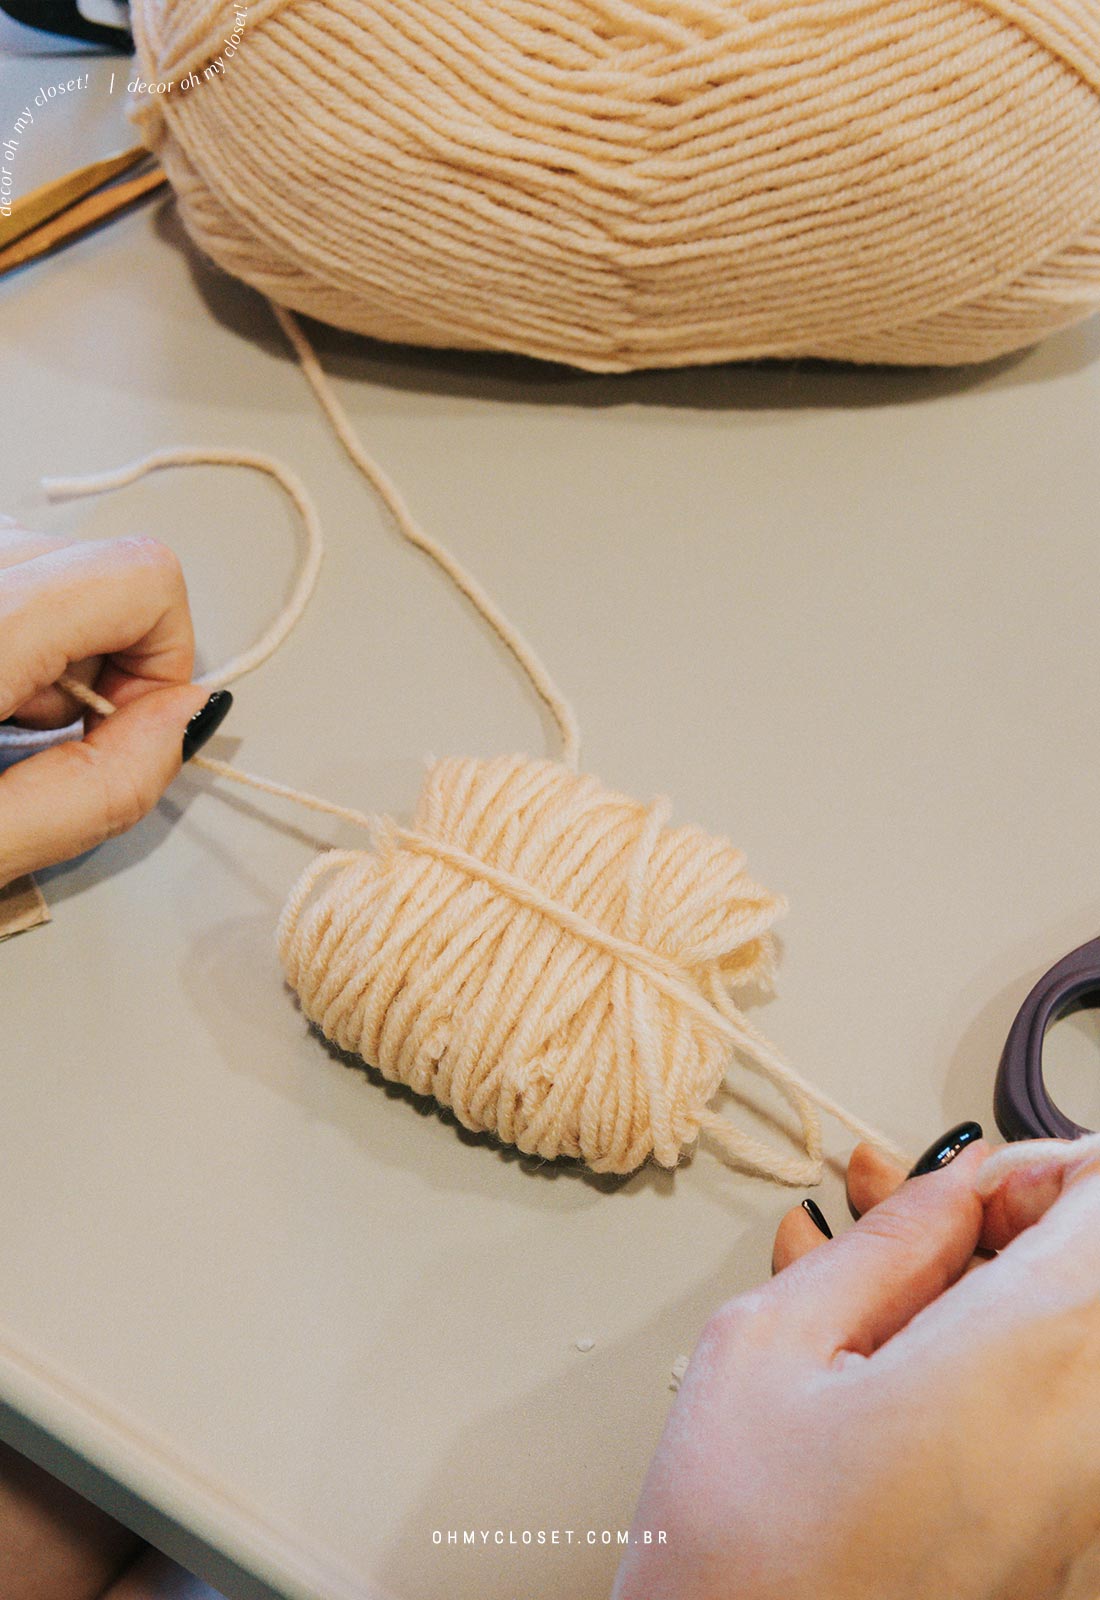 Passo 4: Prendendo a lã antes de cortar.